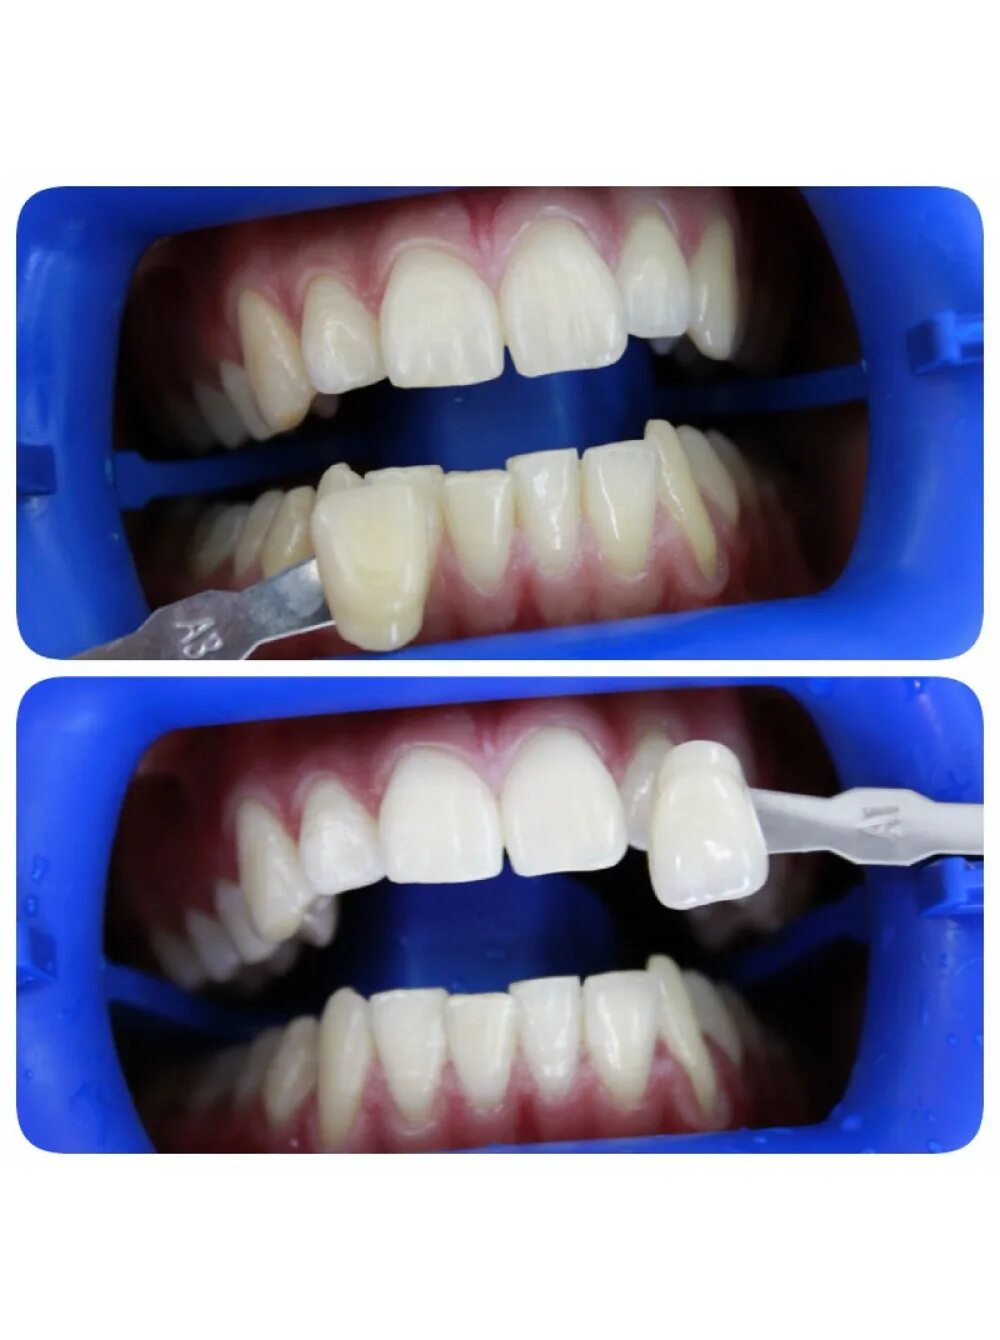 Лазерное отбеливание отзывы. Система отбеливания зубов клокс. Отбеливание инновационной системой Klox. Лазерное отбеливание зубов. Кабинетное отбеливание зубов.